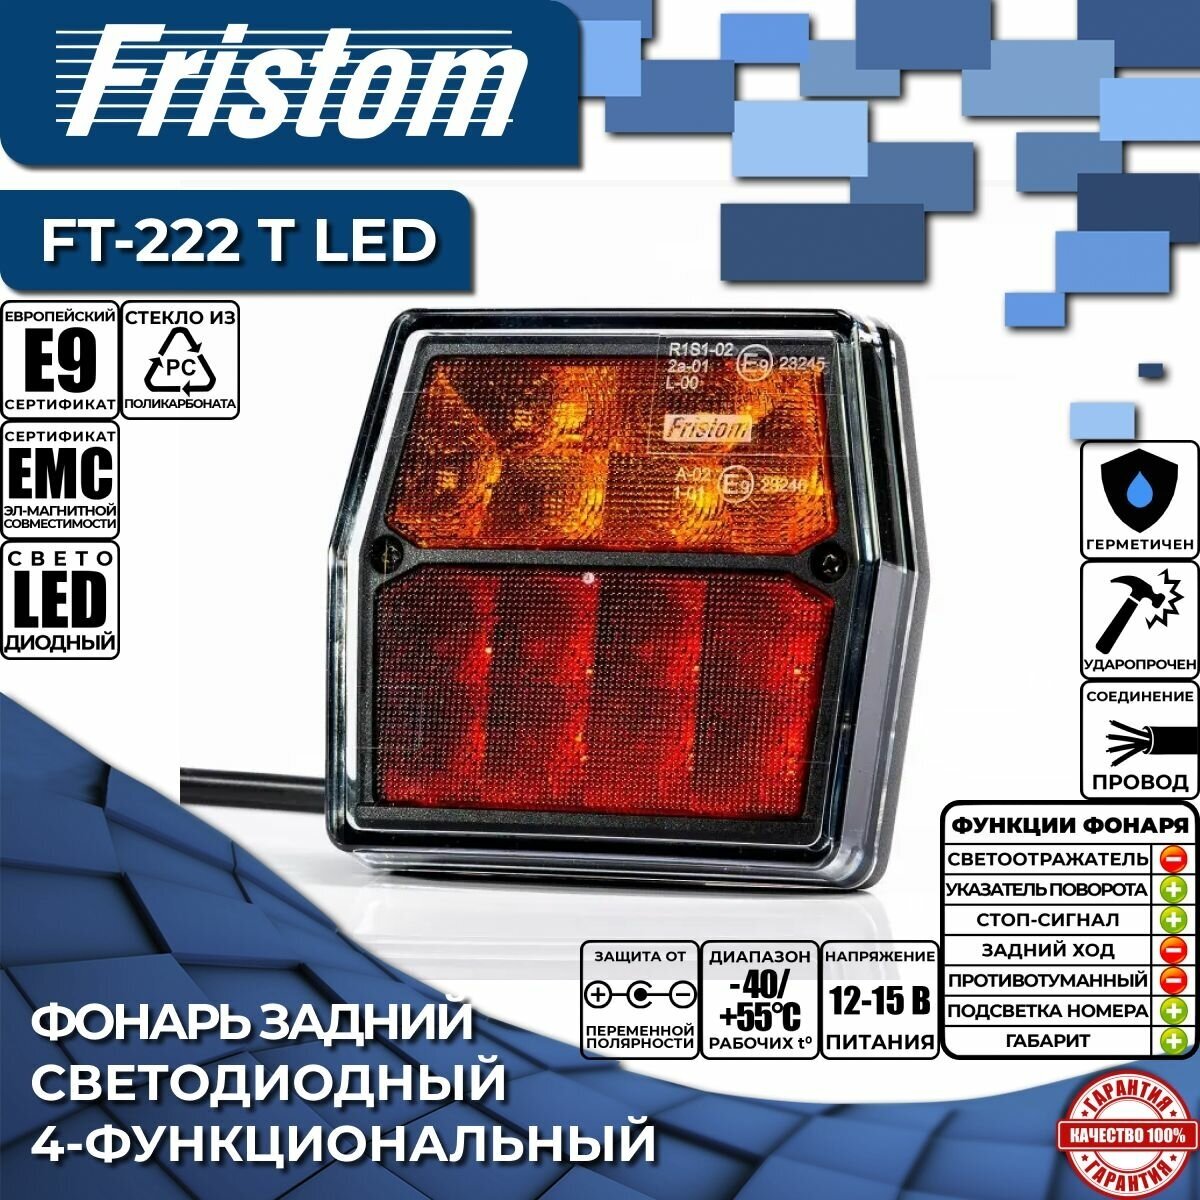 Фонарь на прицеп задний Fristom FT-222 T LED 4-функциональный светодиодный, (1 шт.)